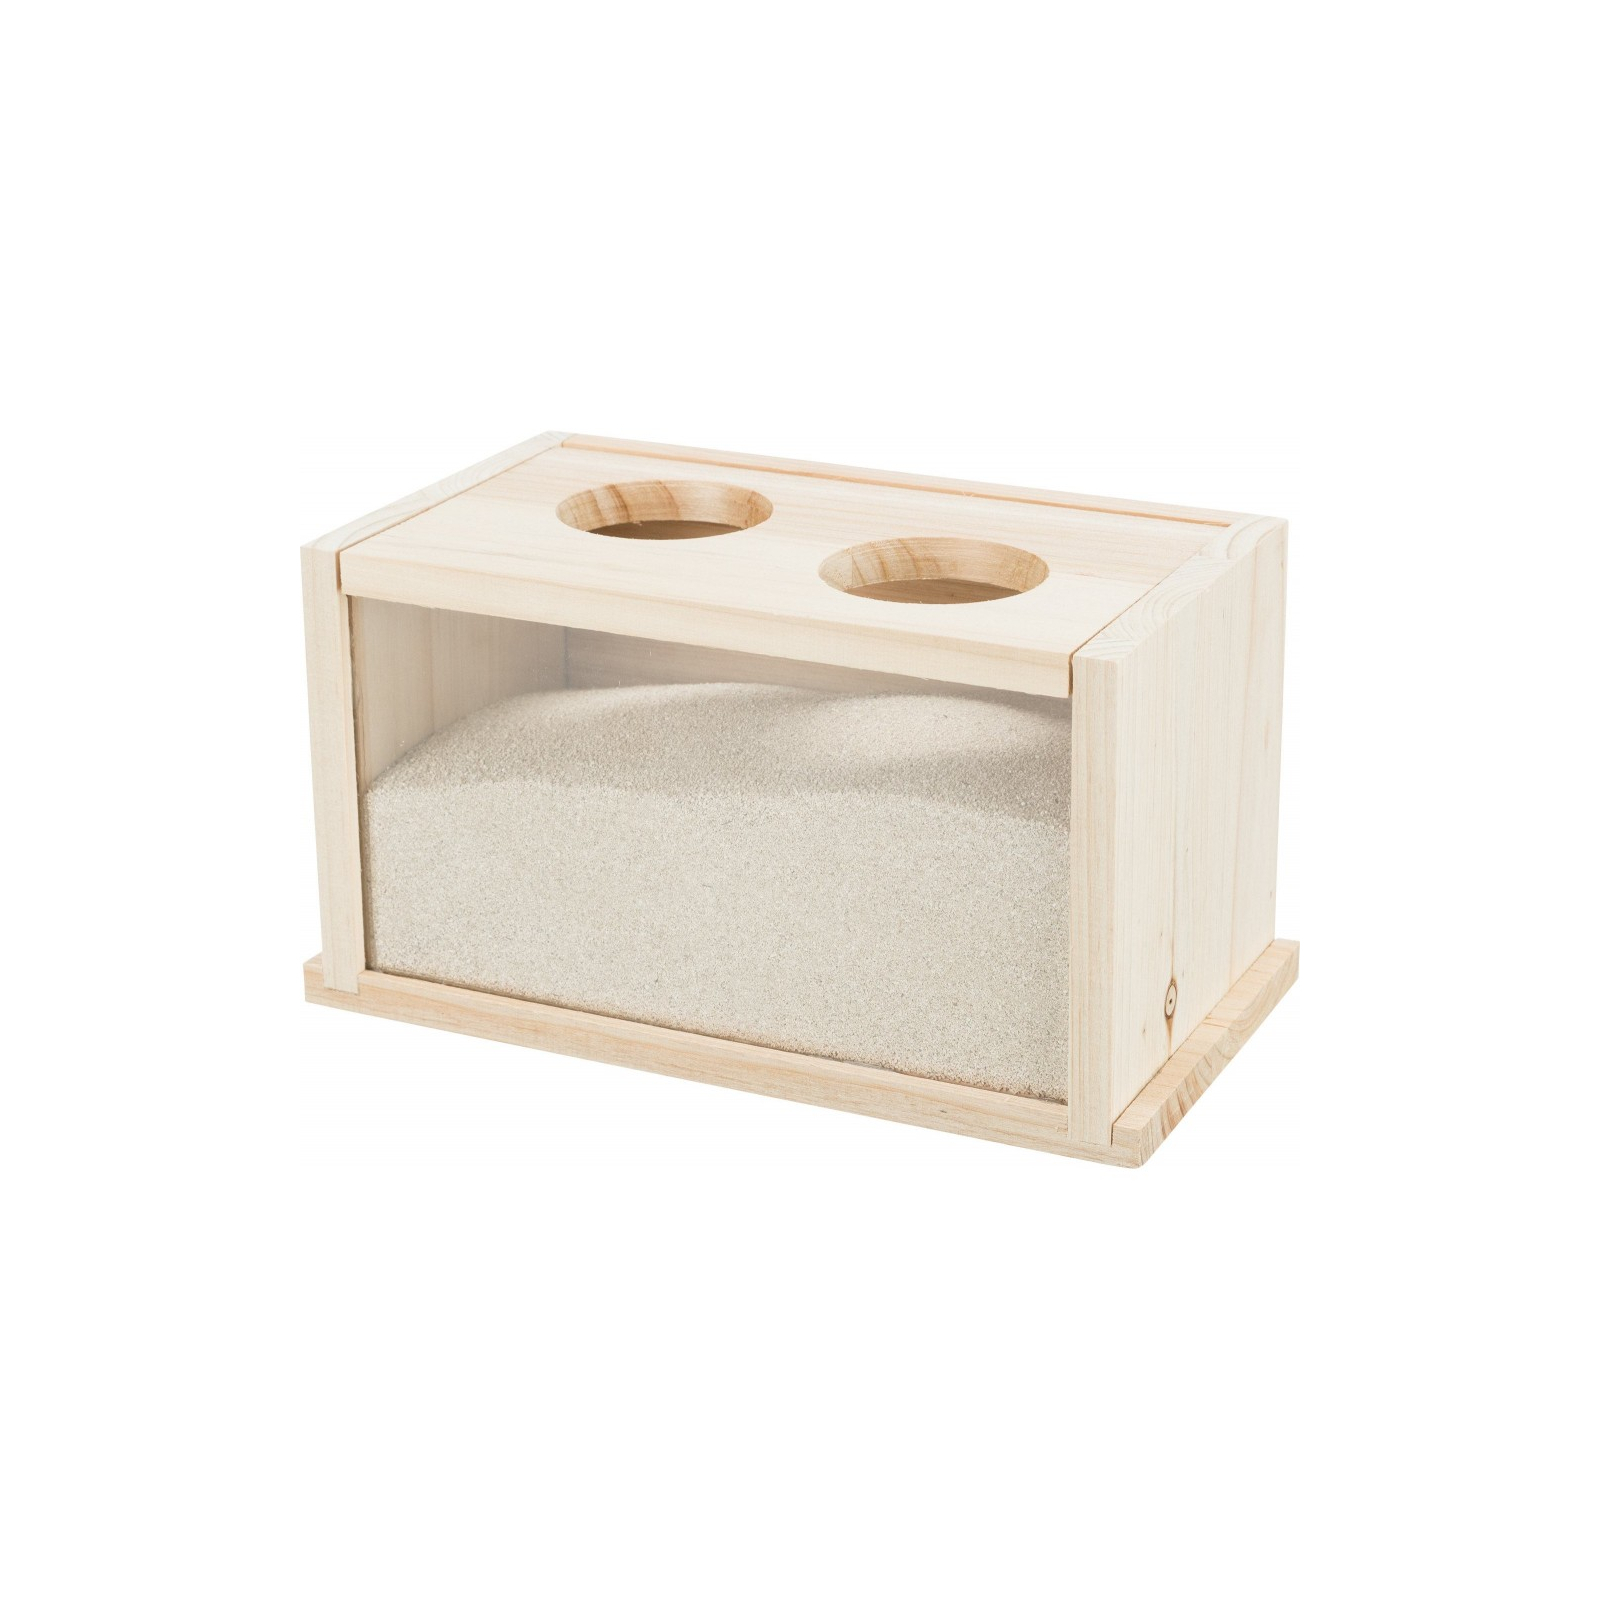 Іграшка для гризунів Trixie Ванна дерев'яна 22х12х12 см (4011905630045)